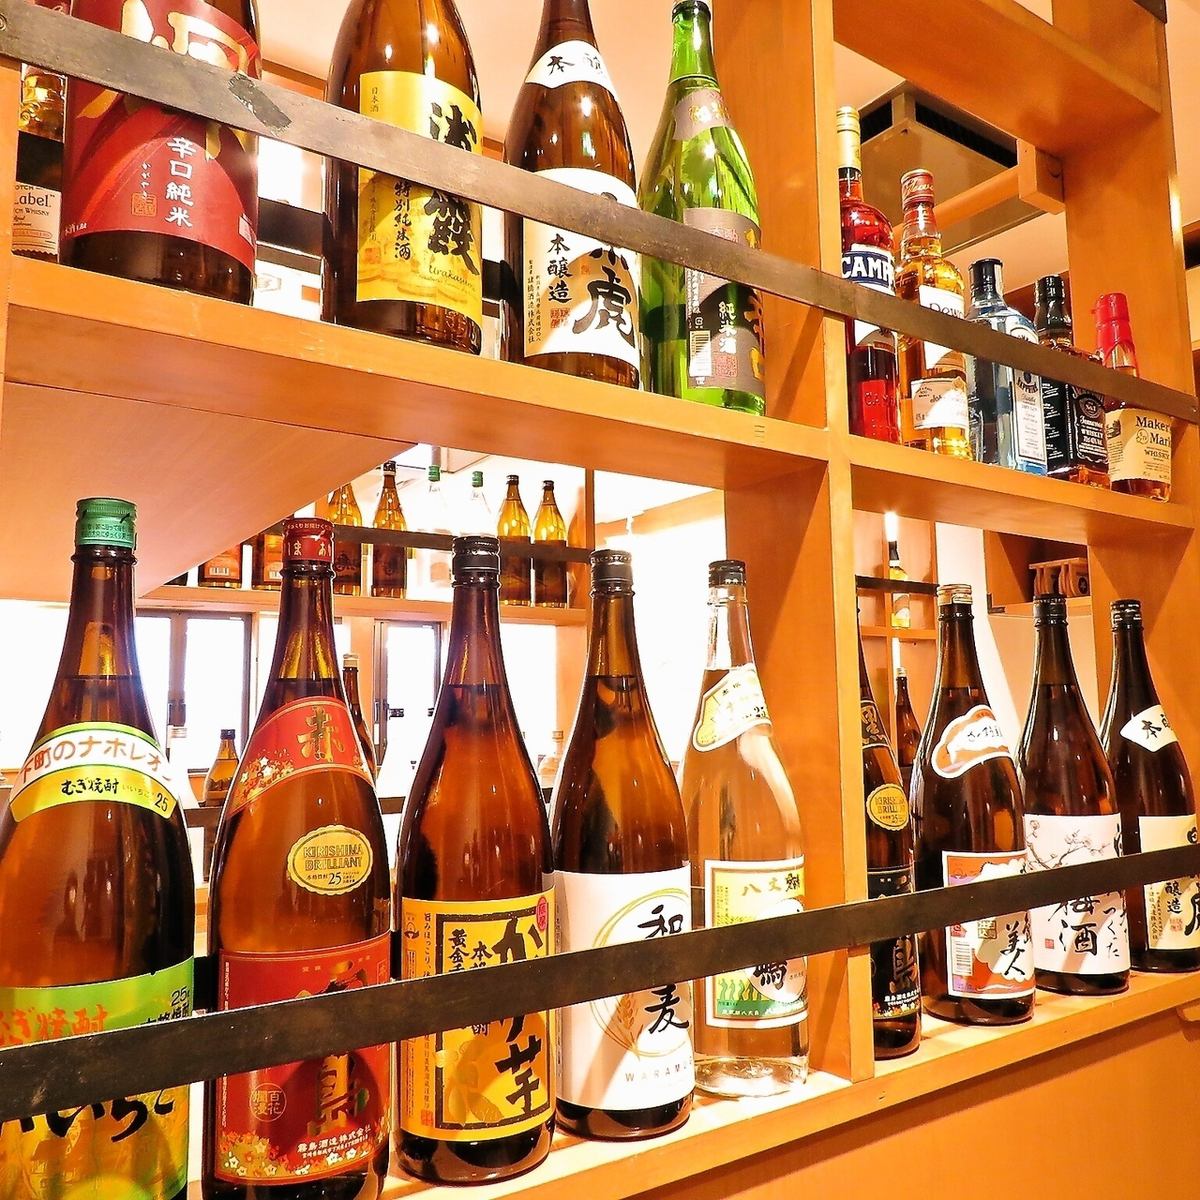 当天可以！2小时无限畅饮♪加500日元还可以享用生啤酒和绍兴酒！